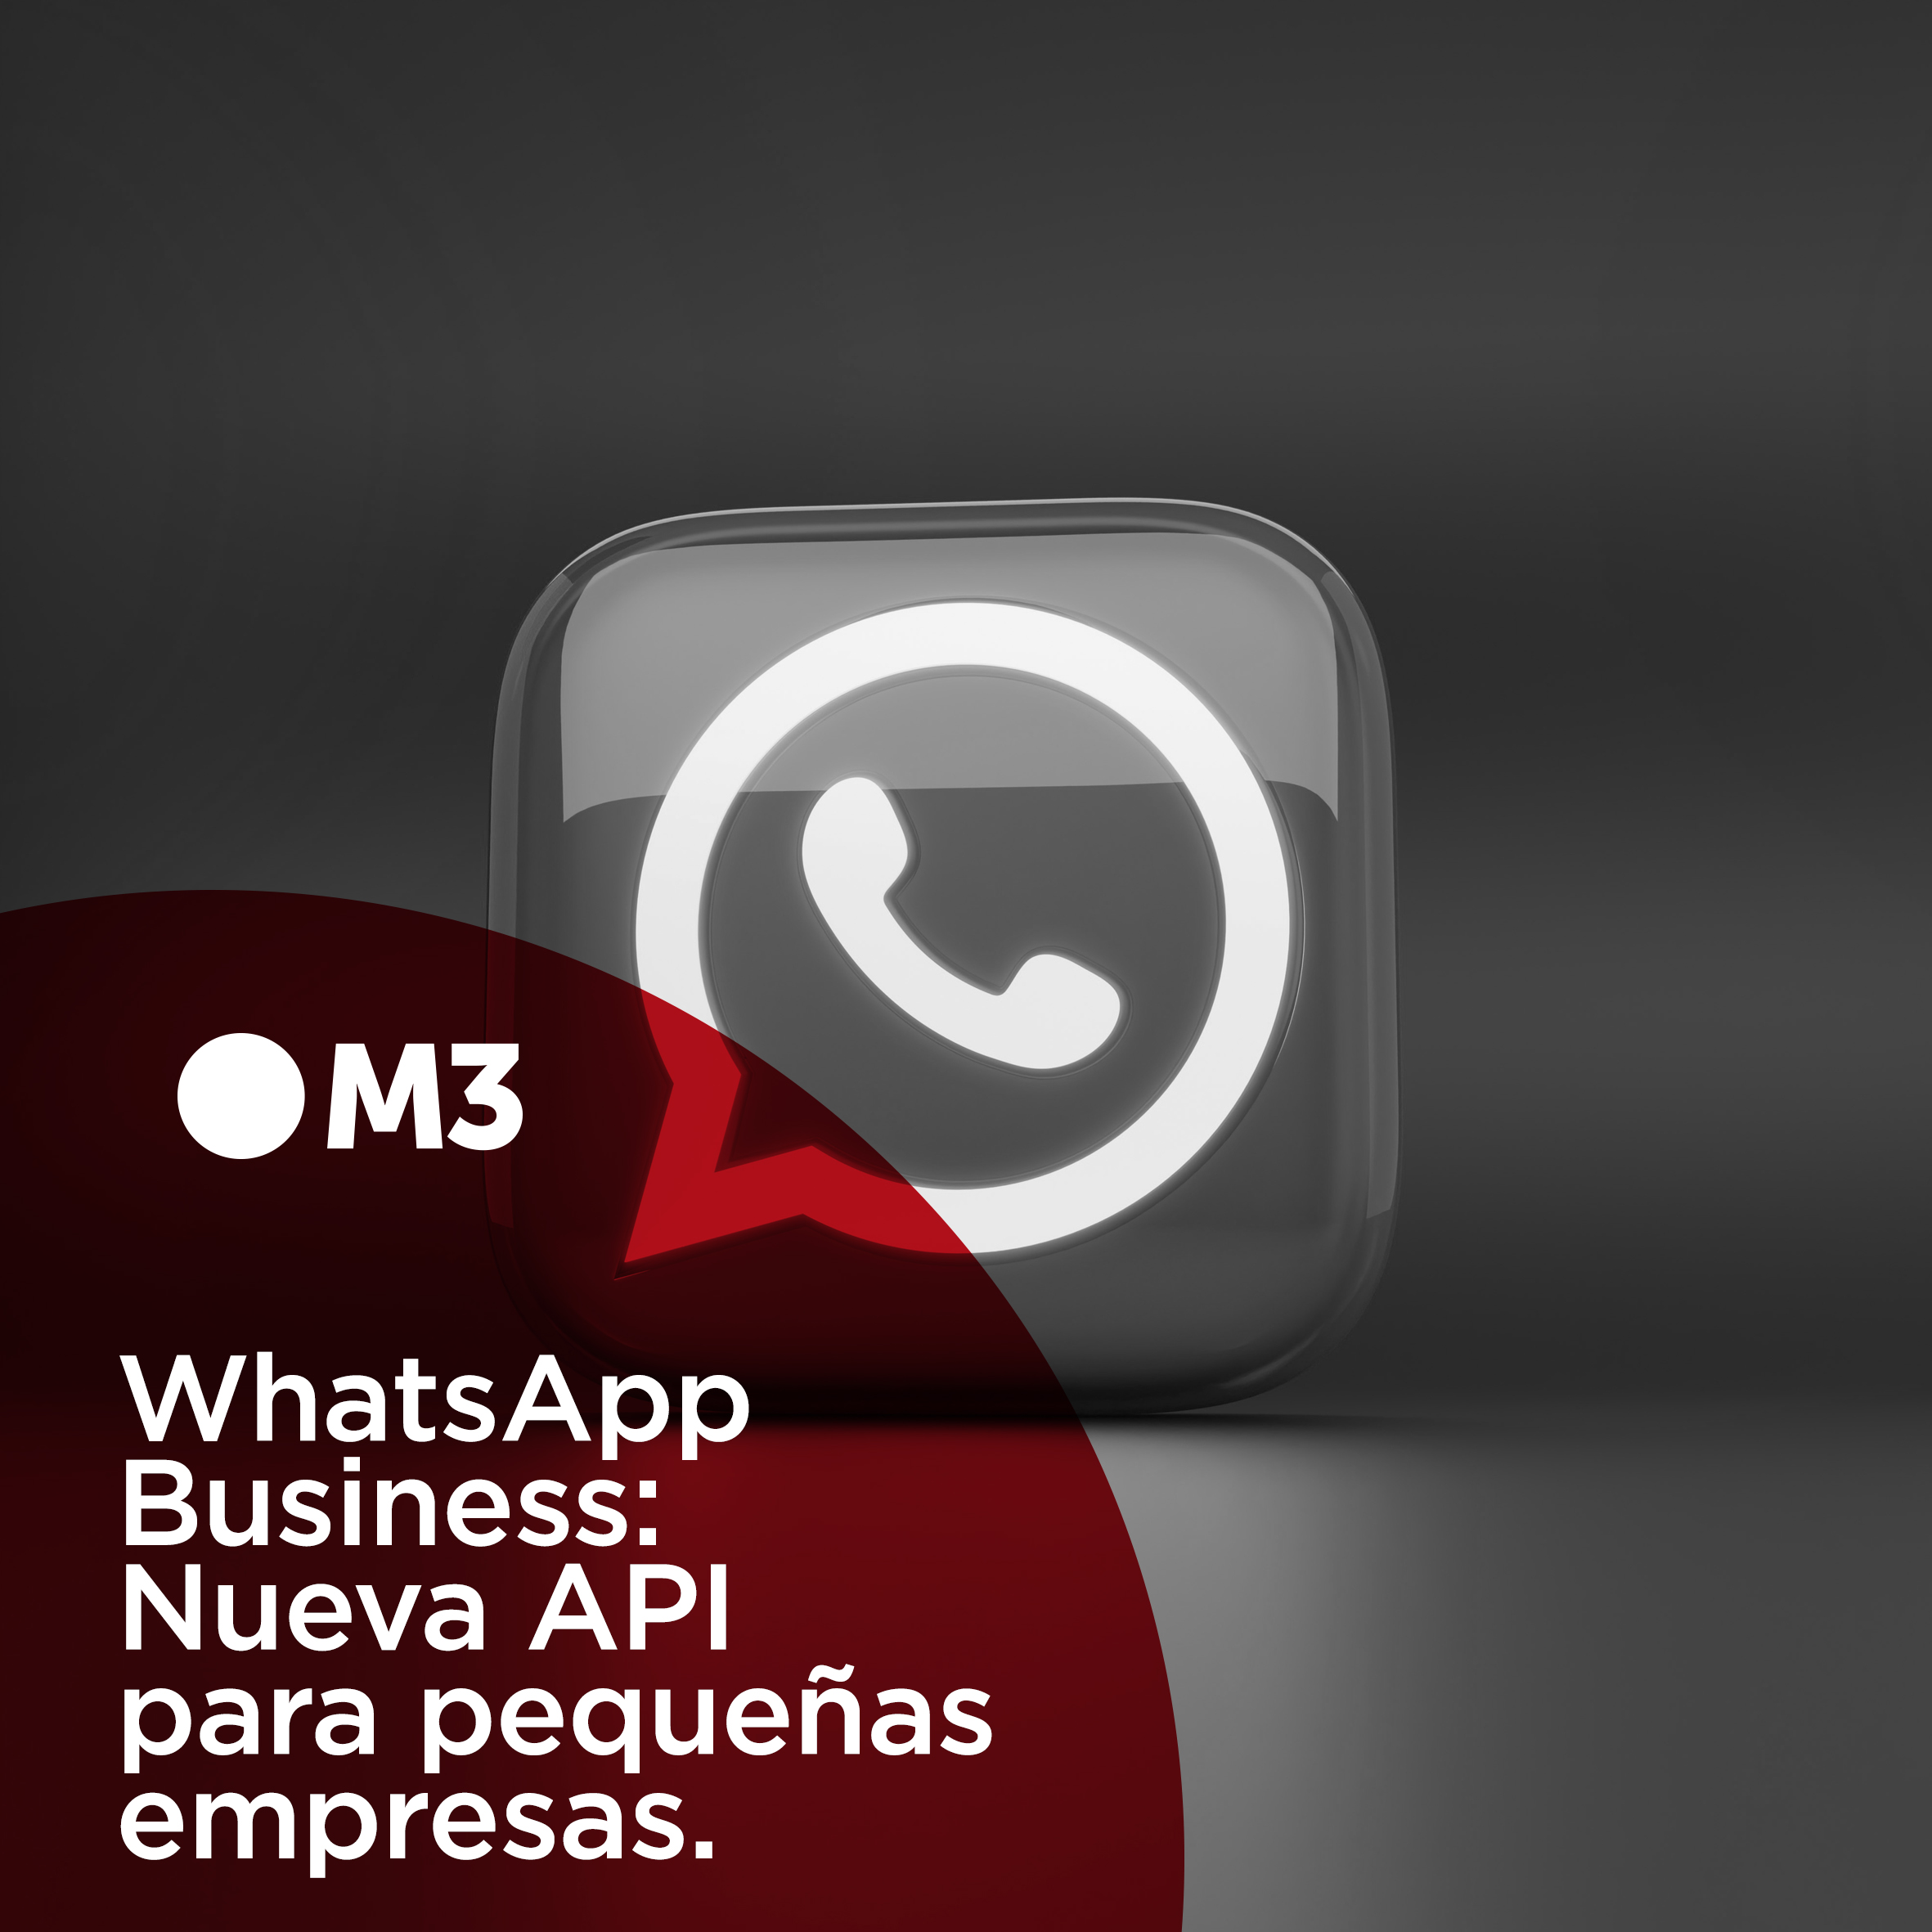 WhatsApp Business: nueva API para pequeñas empresas